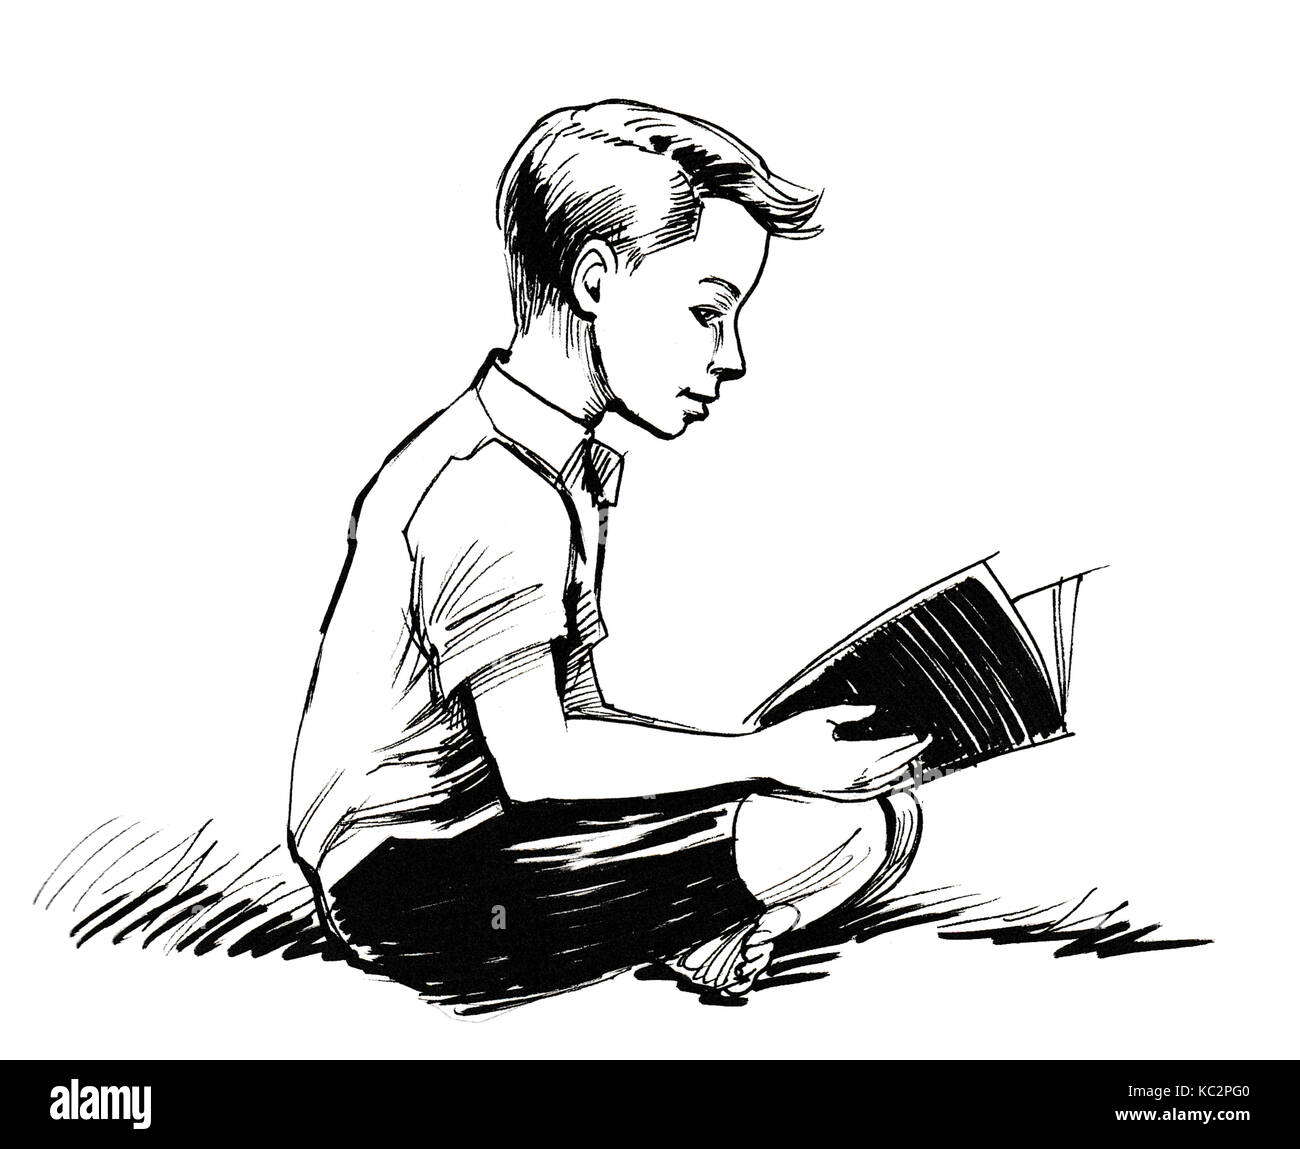 Illustration White Boy Reading Book Stock Photos ...